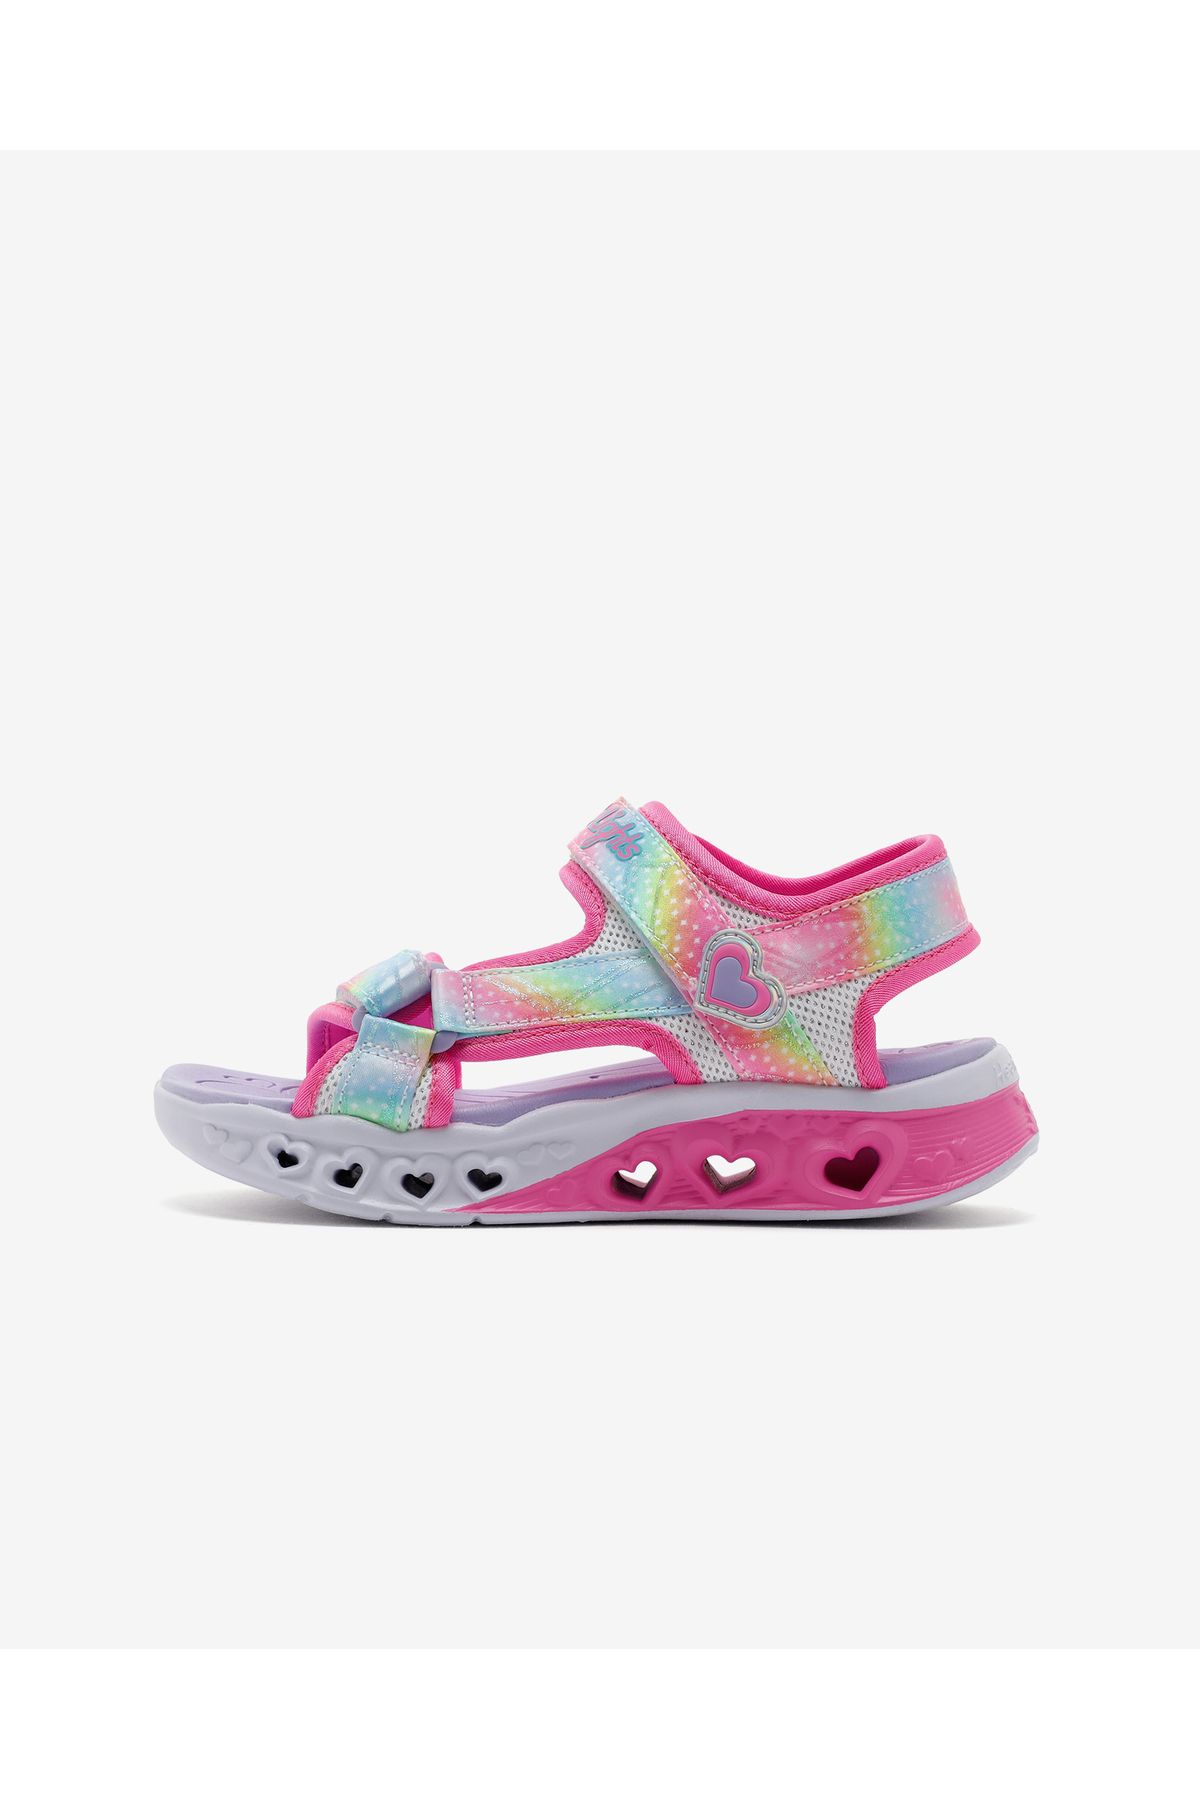 Skechers Flutter Hearts Sandal - Twilight Dash Büyük Kız Çocuk Beyaz Işıklı Sandalet 303105l Wmlt